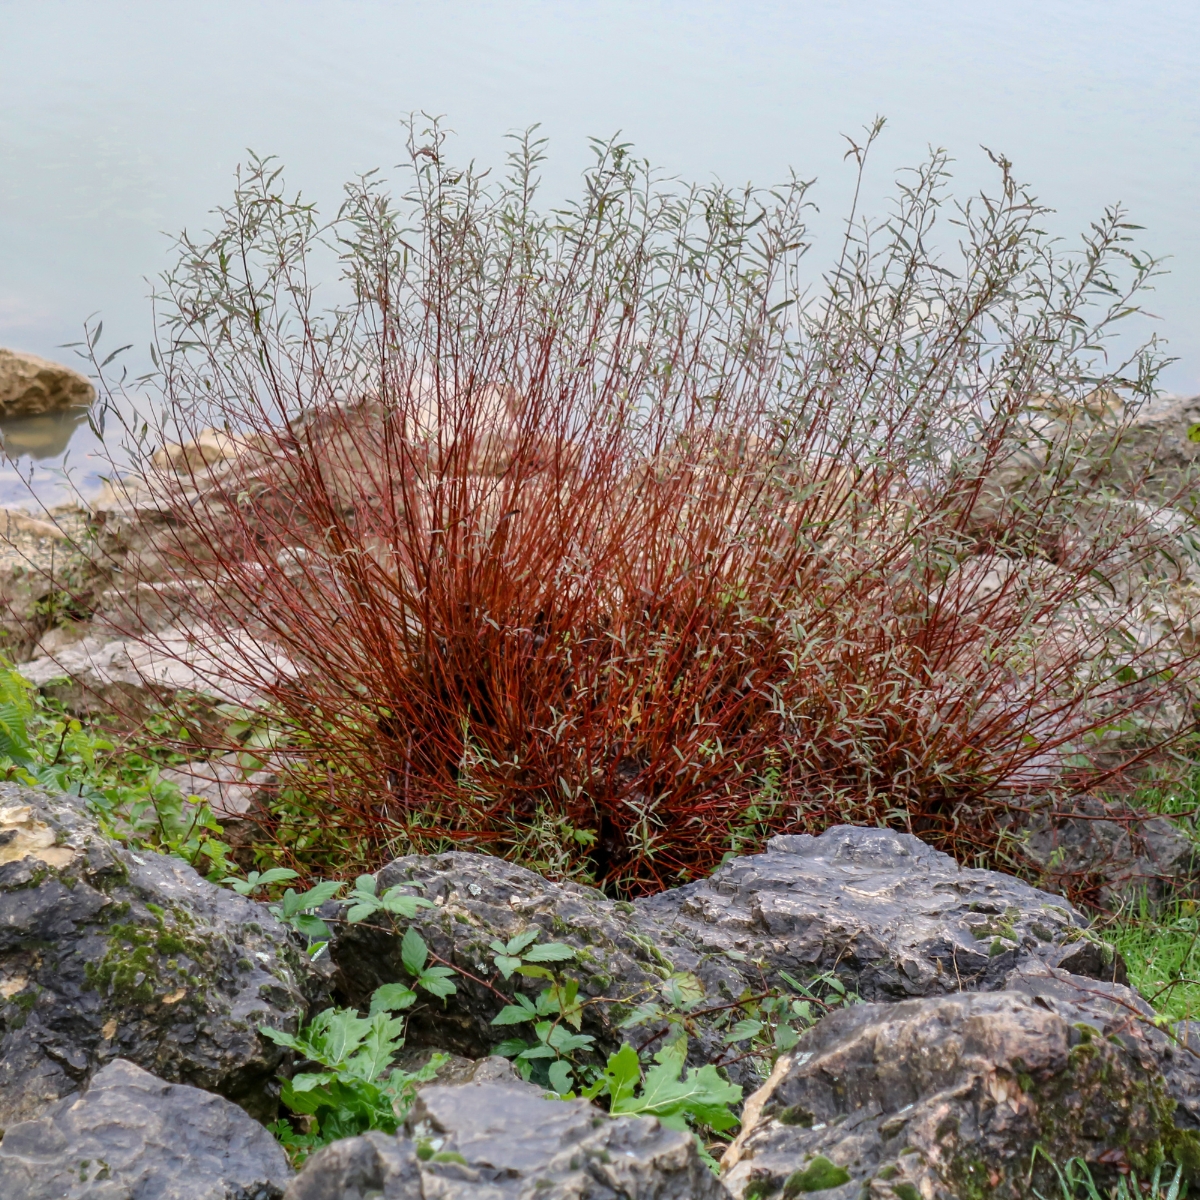 red twig dogwood growing among rocks along water's edge